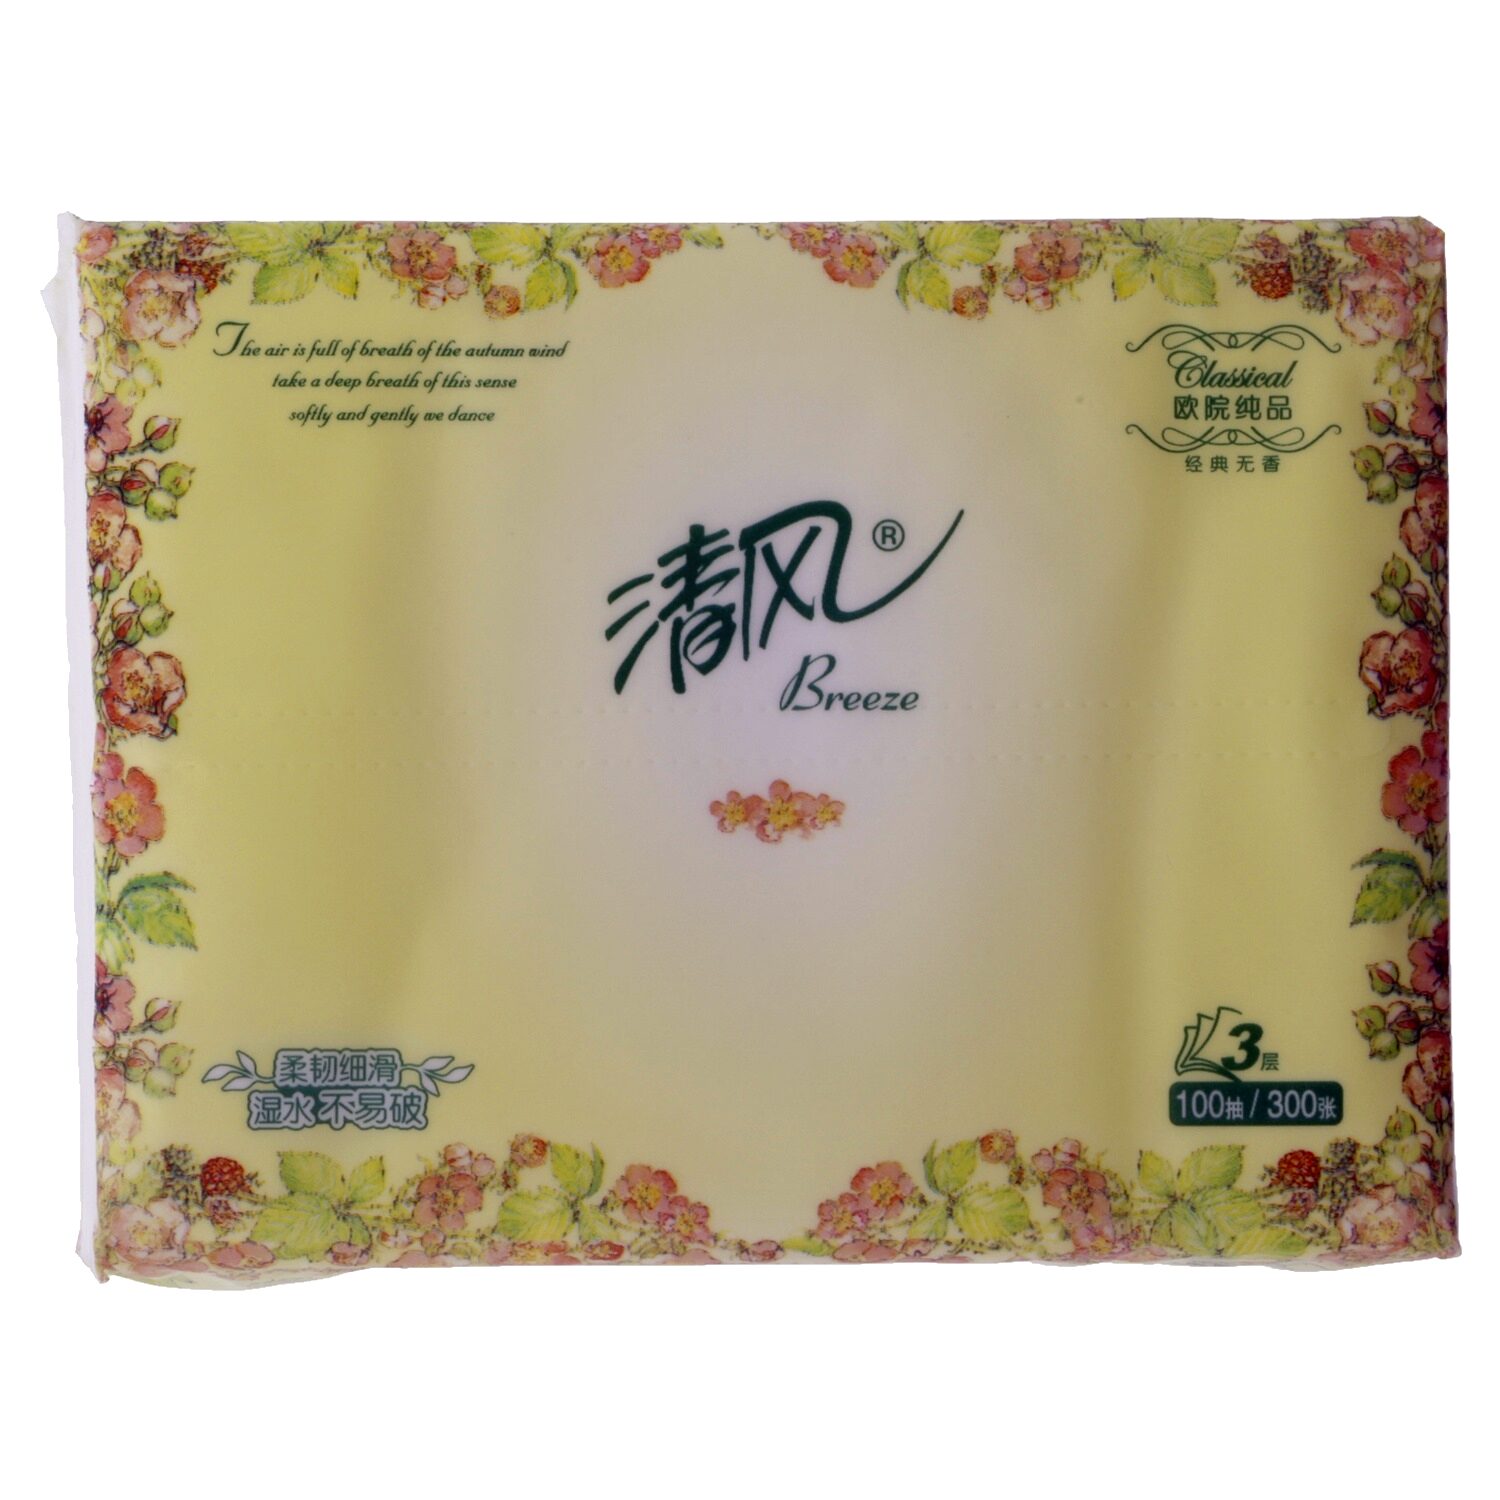 清风牌面巾纸 - מוצר - zh